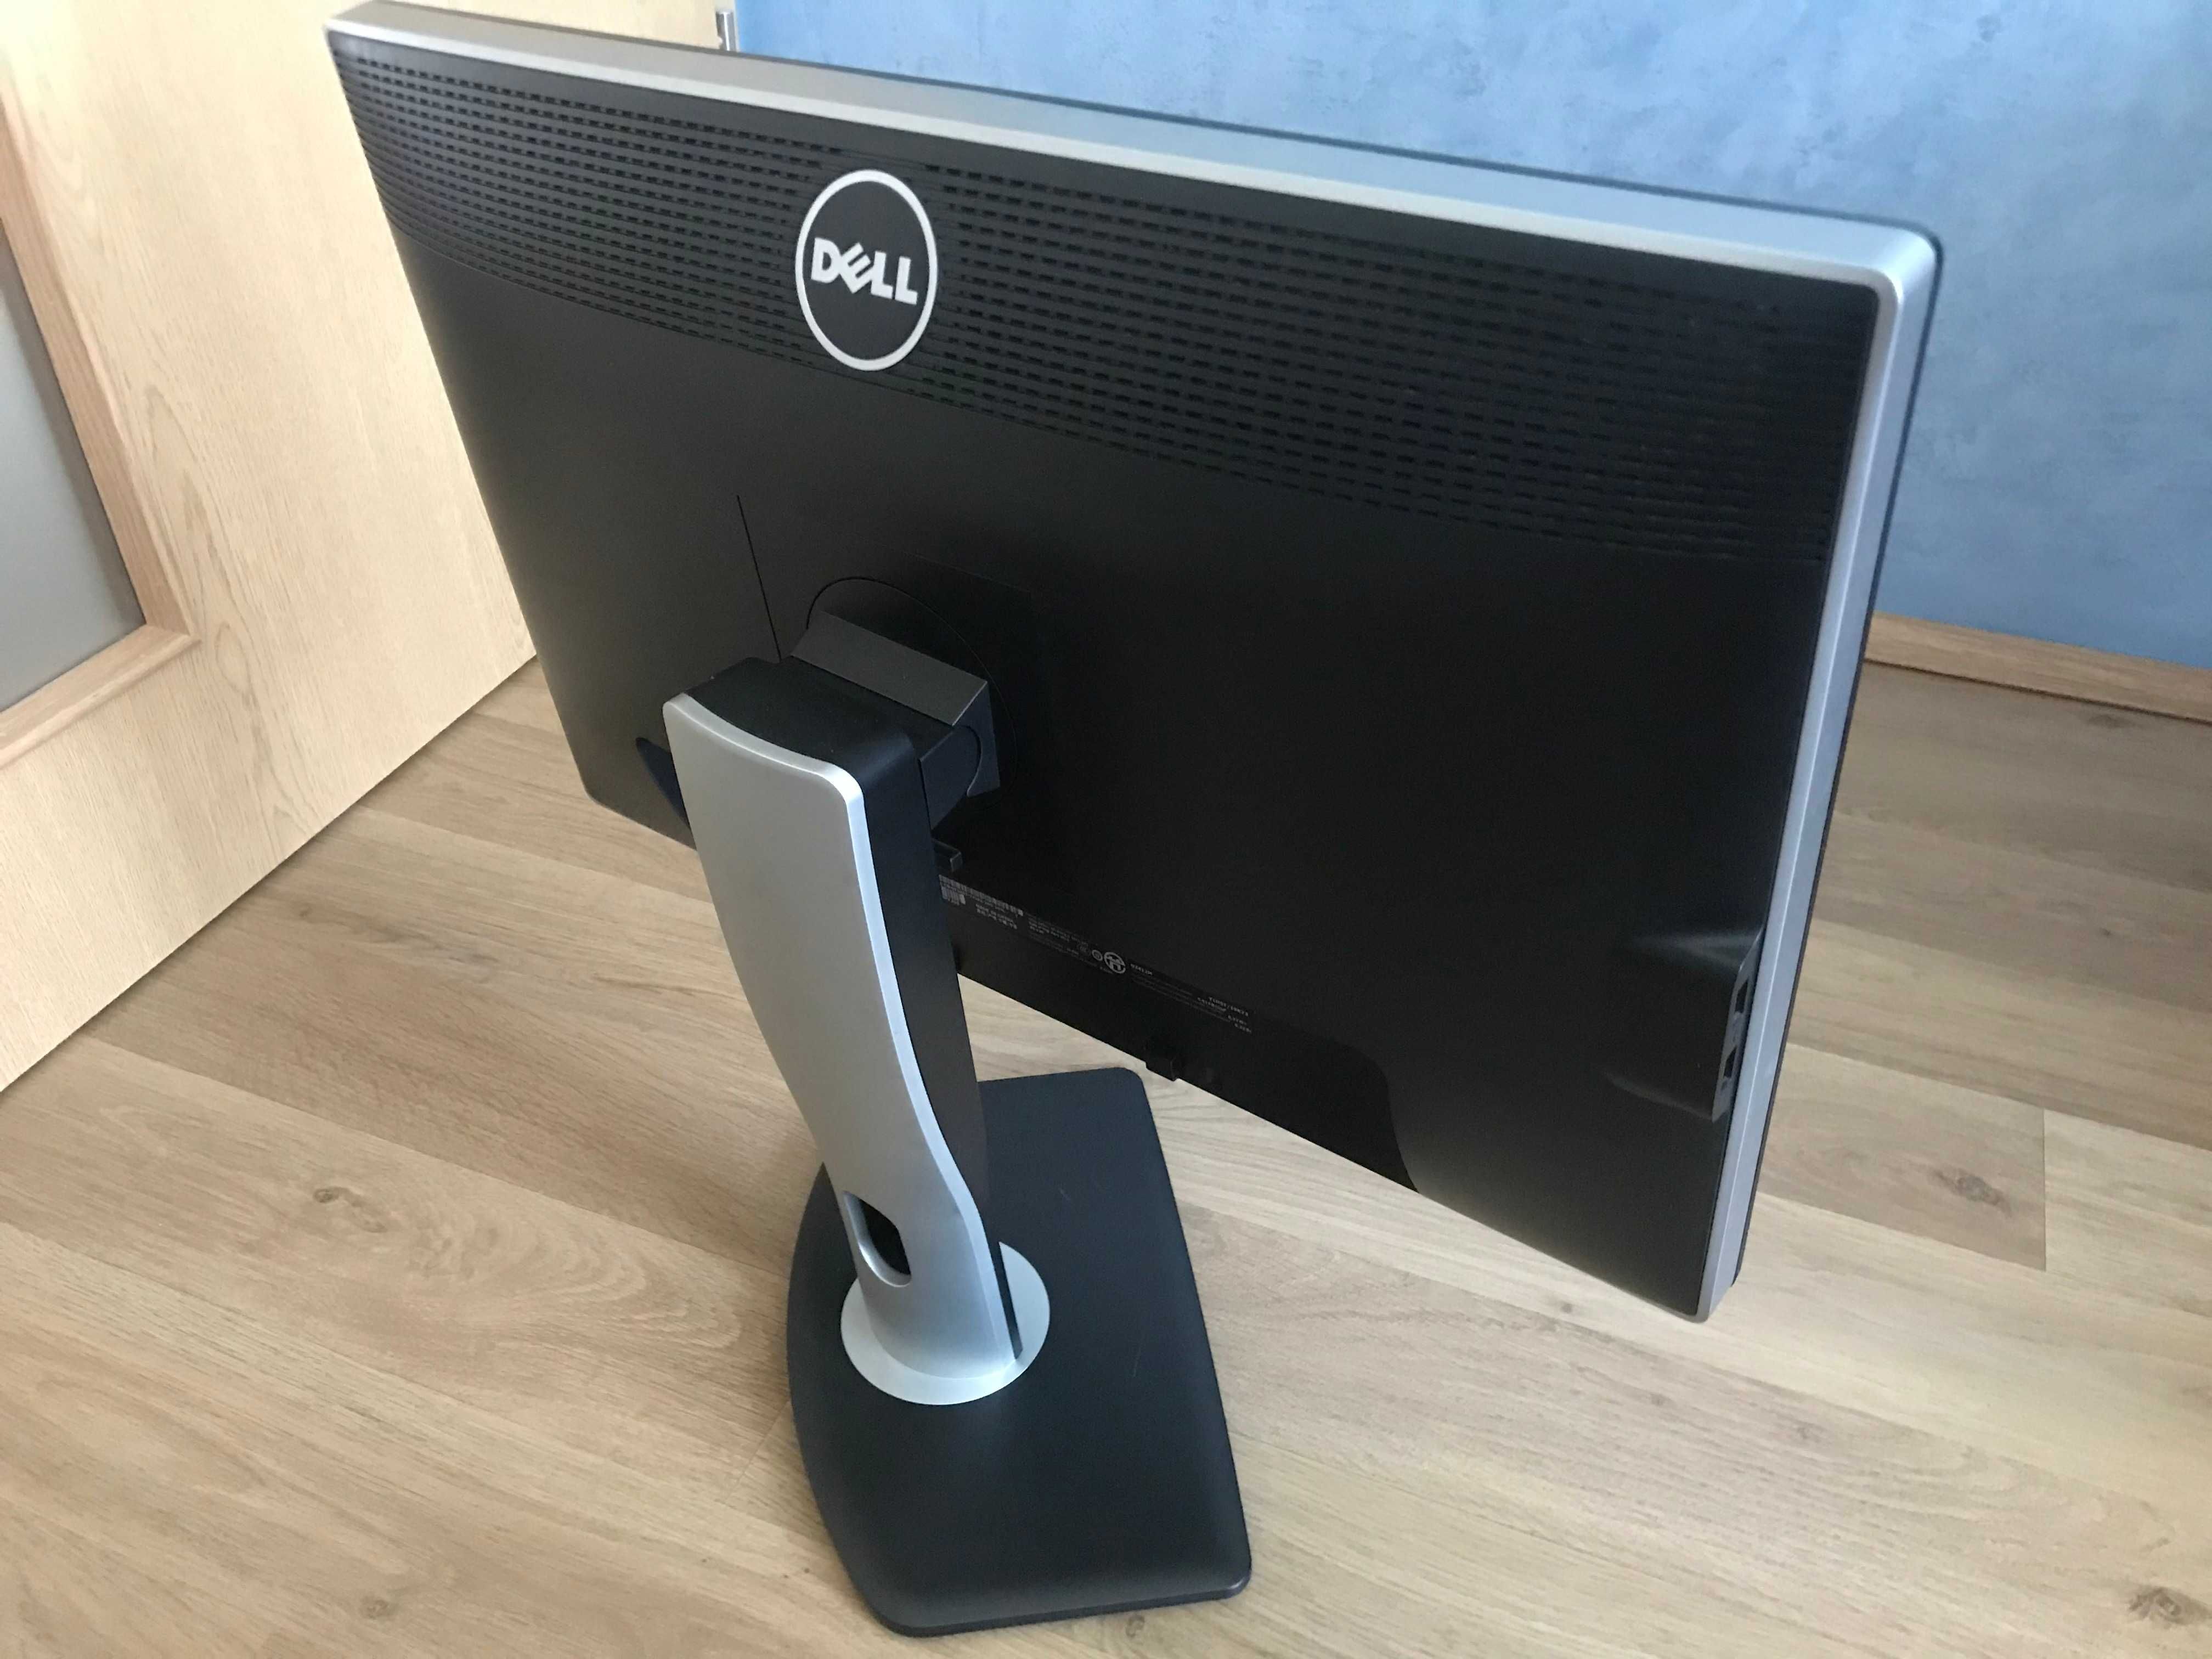 Monitor Dell in stare foarte buna